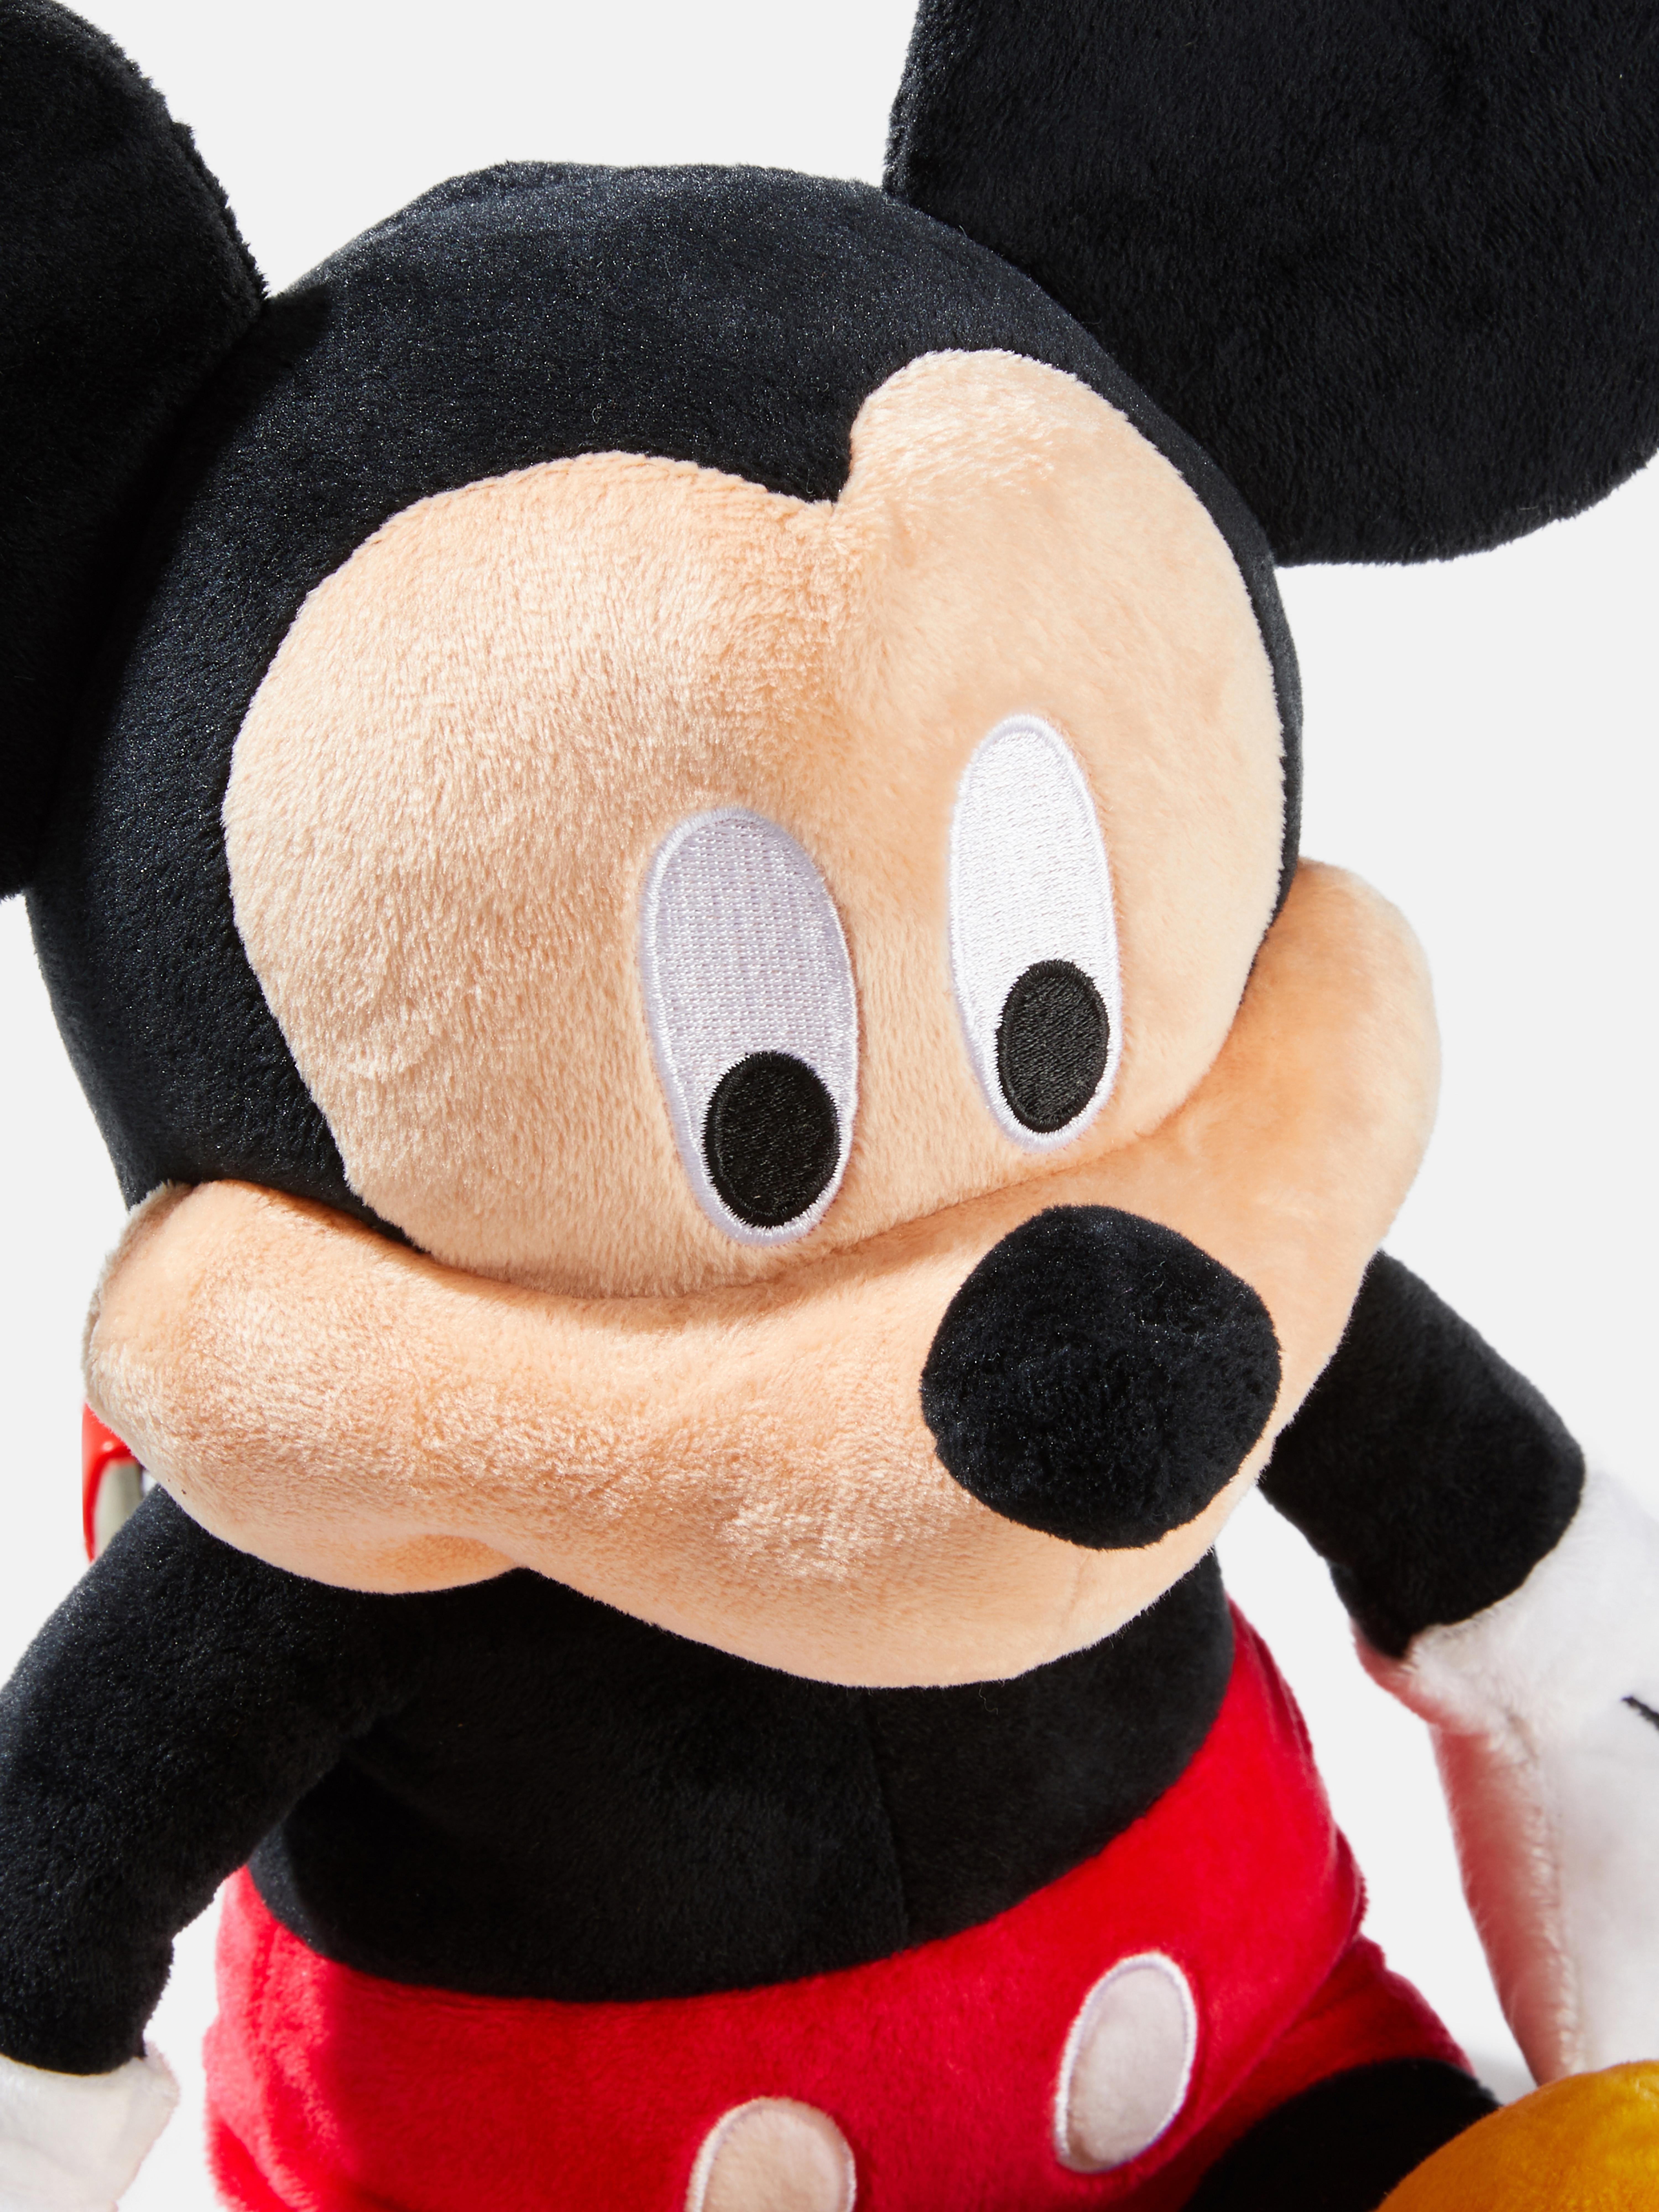 Disney's Mickey Mouse Plush Toy